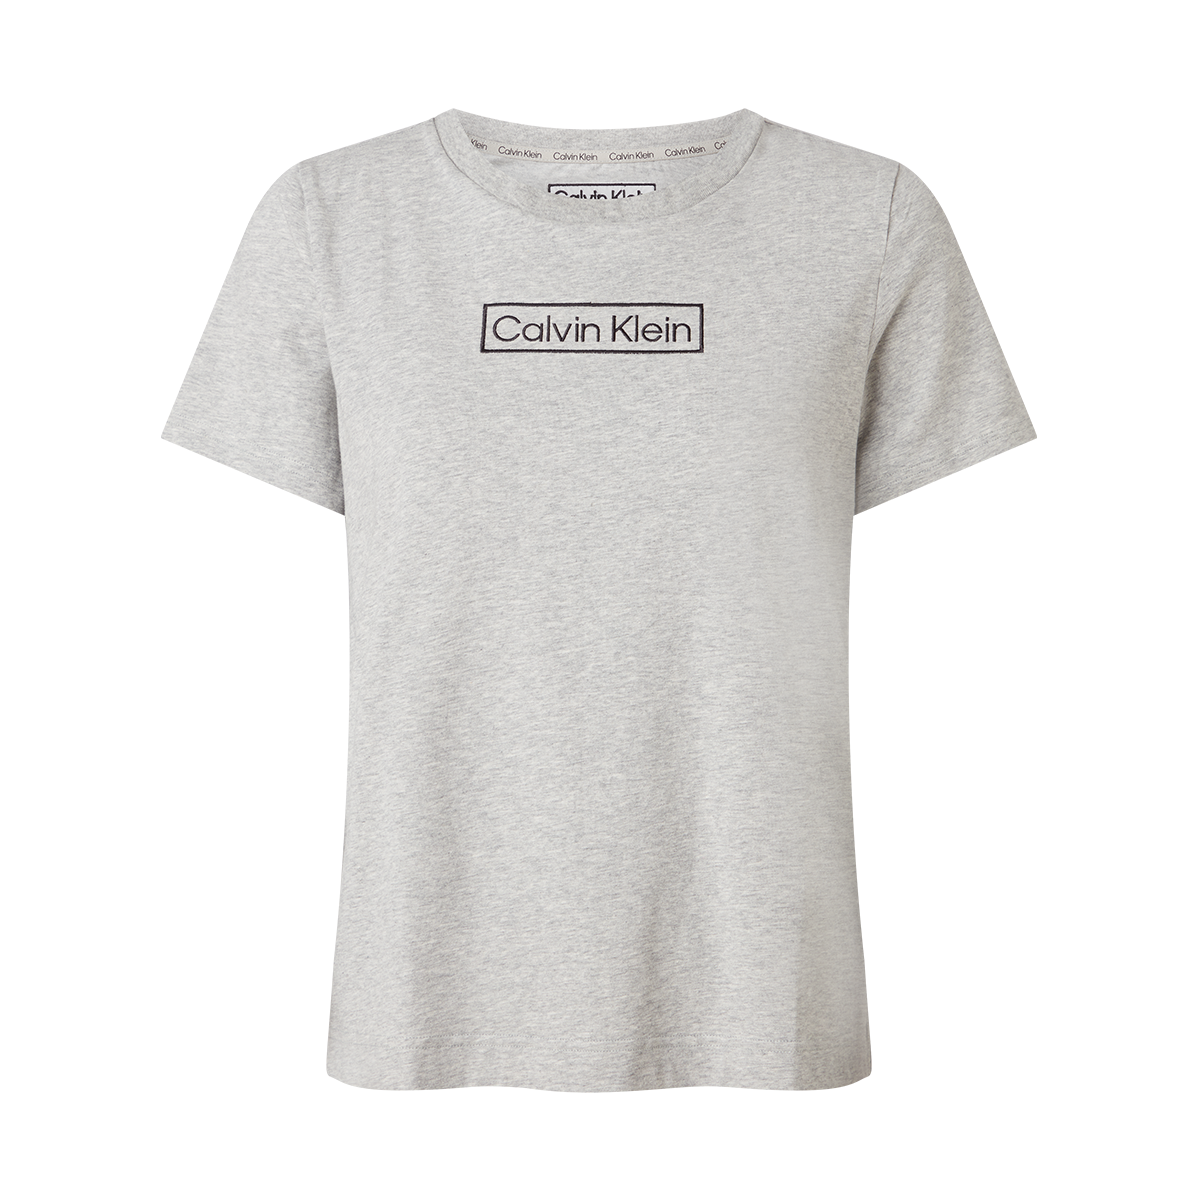 #2 - Calvin Klein Crew Neck T-shirt, Farve: Grå, Størrelse: S, Dame